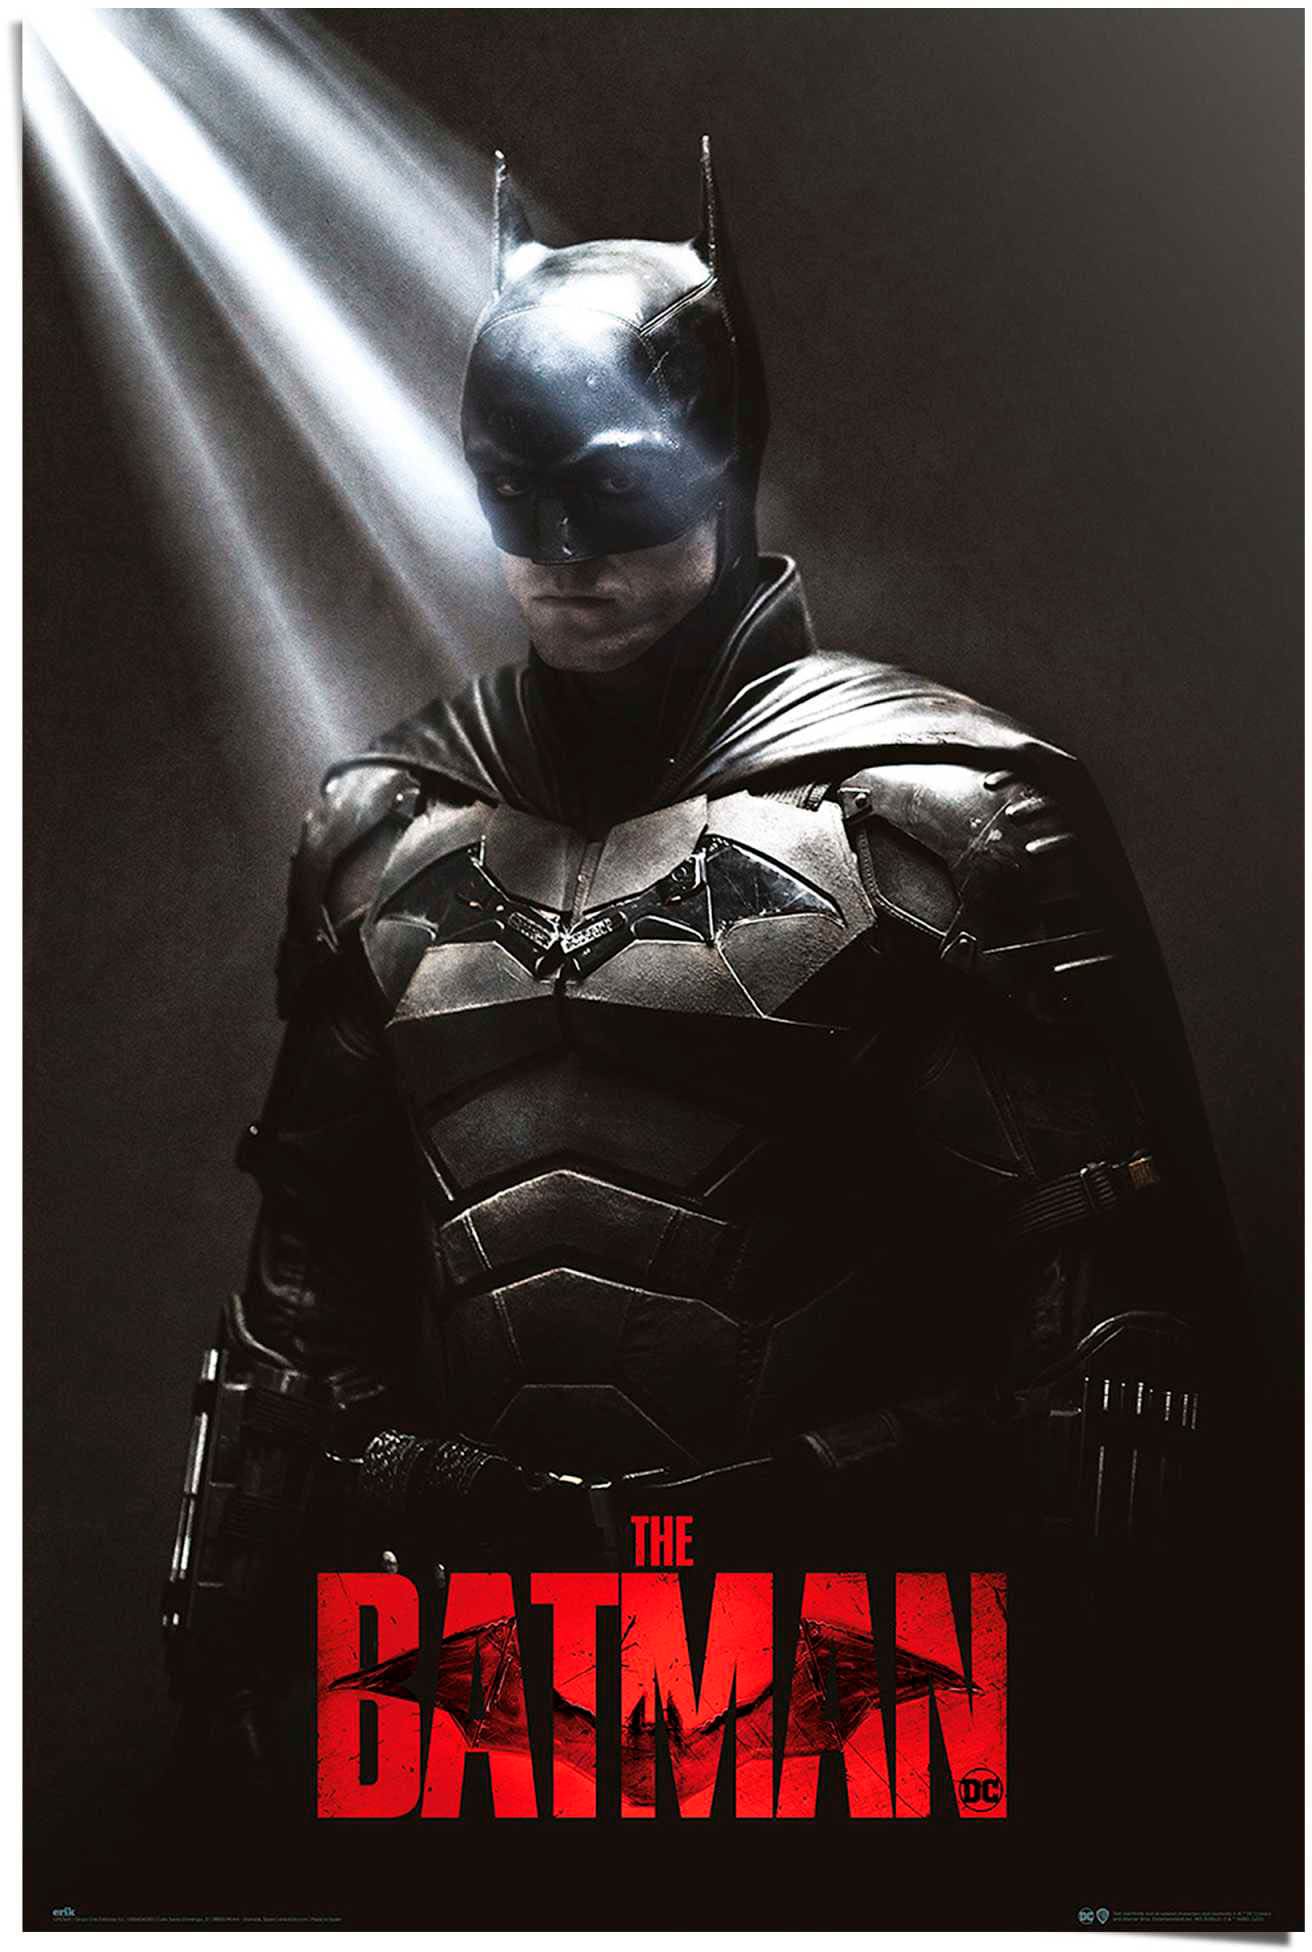 Reinders! Poster »DC The Batman en commander - I shadows« ligne the am